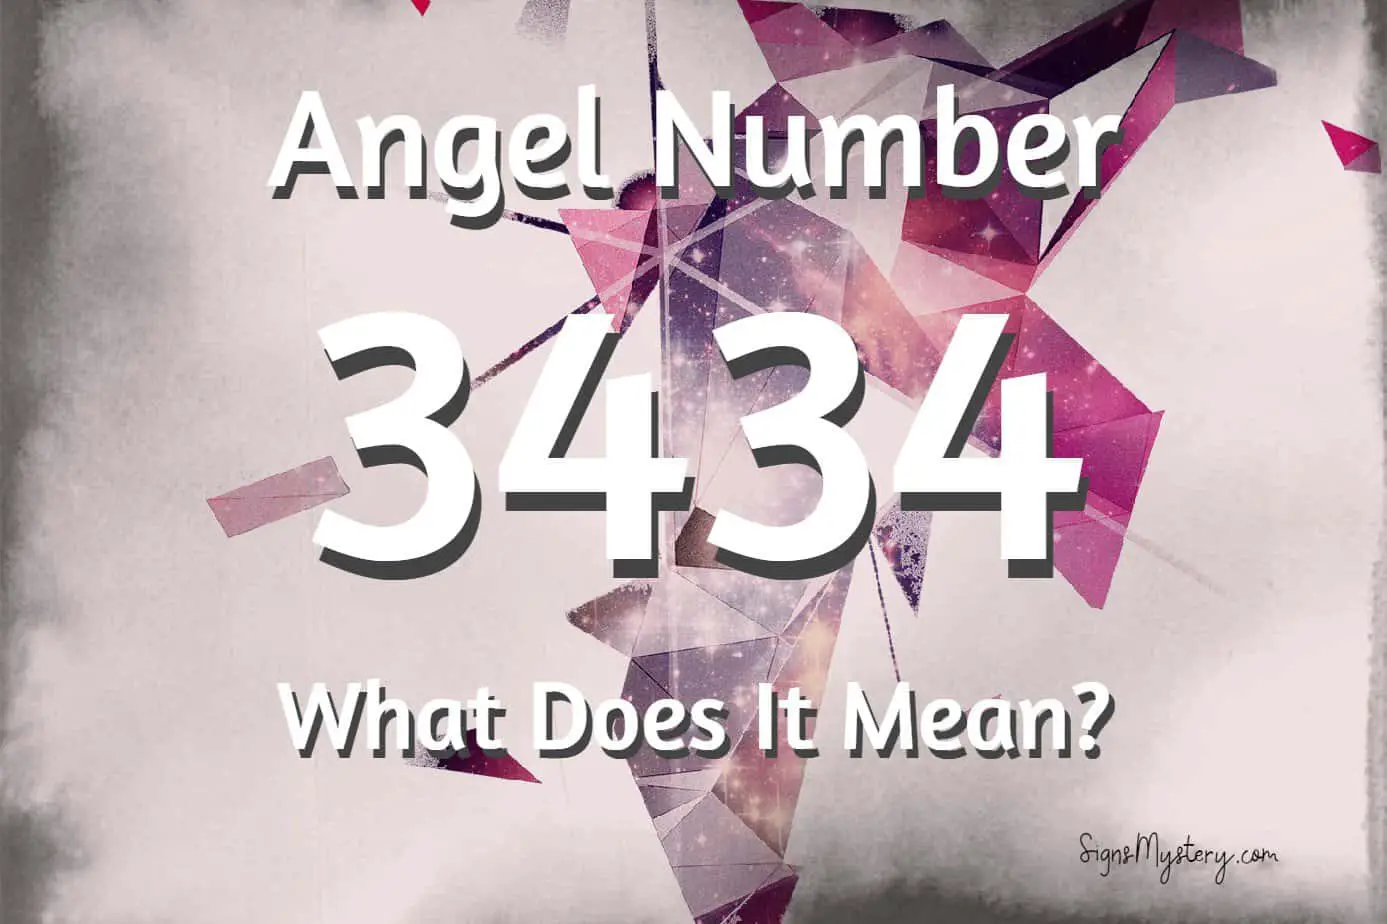 3434 Angel Number